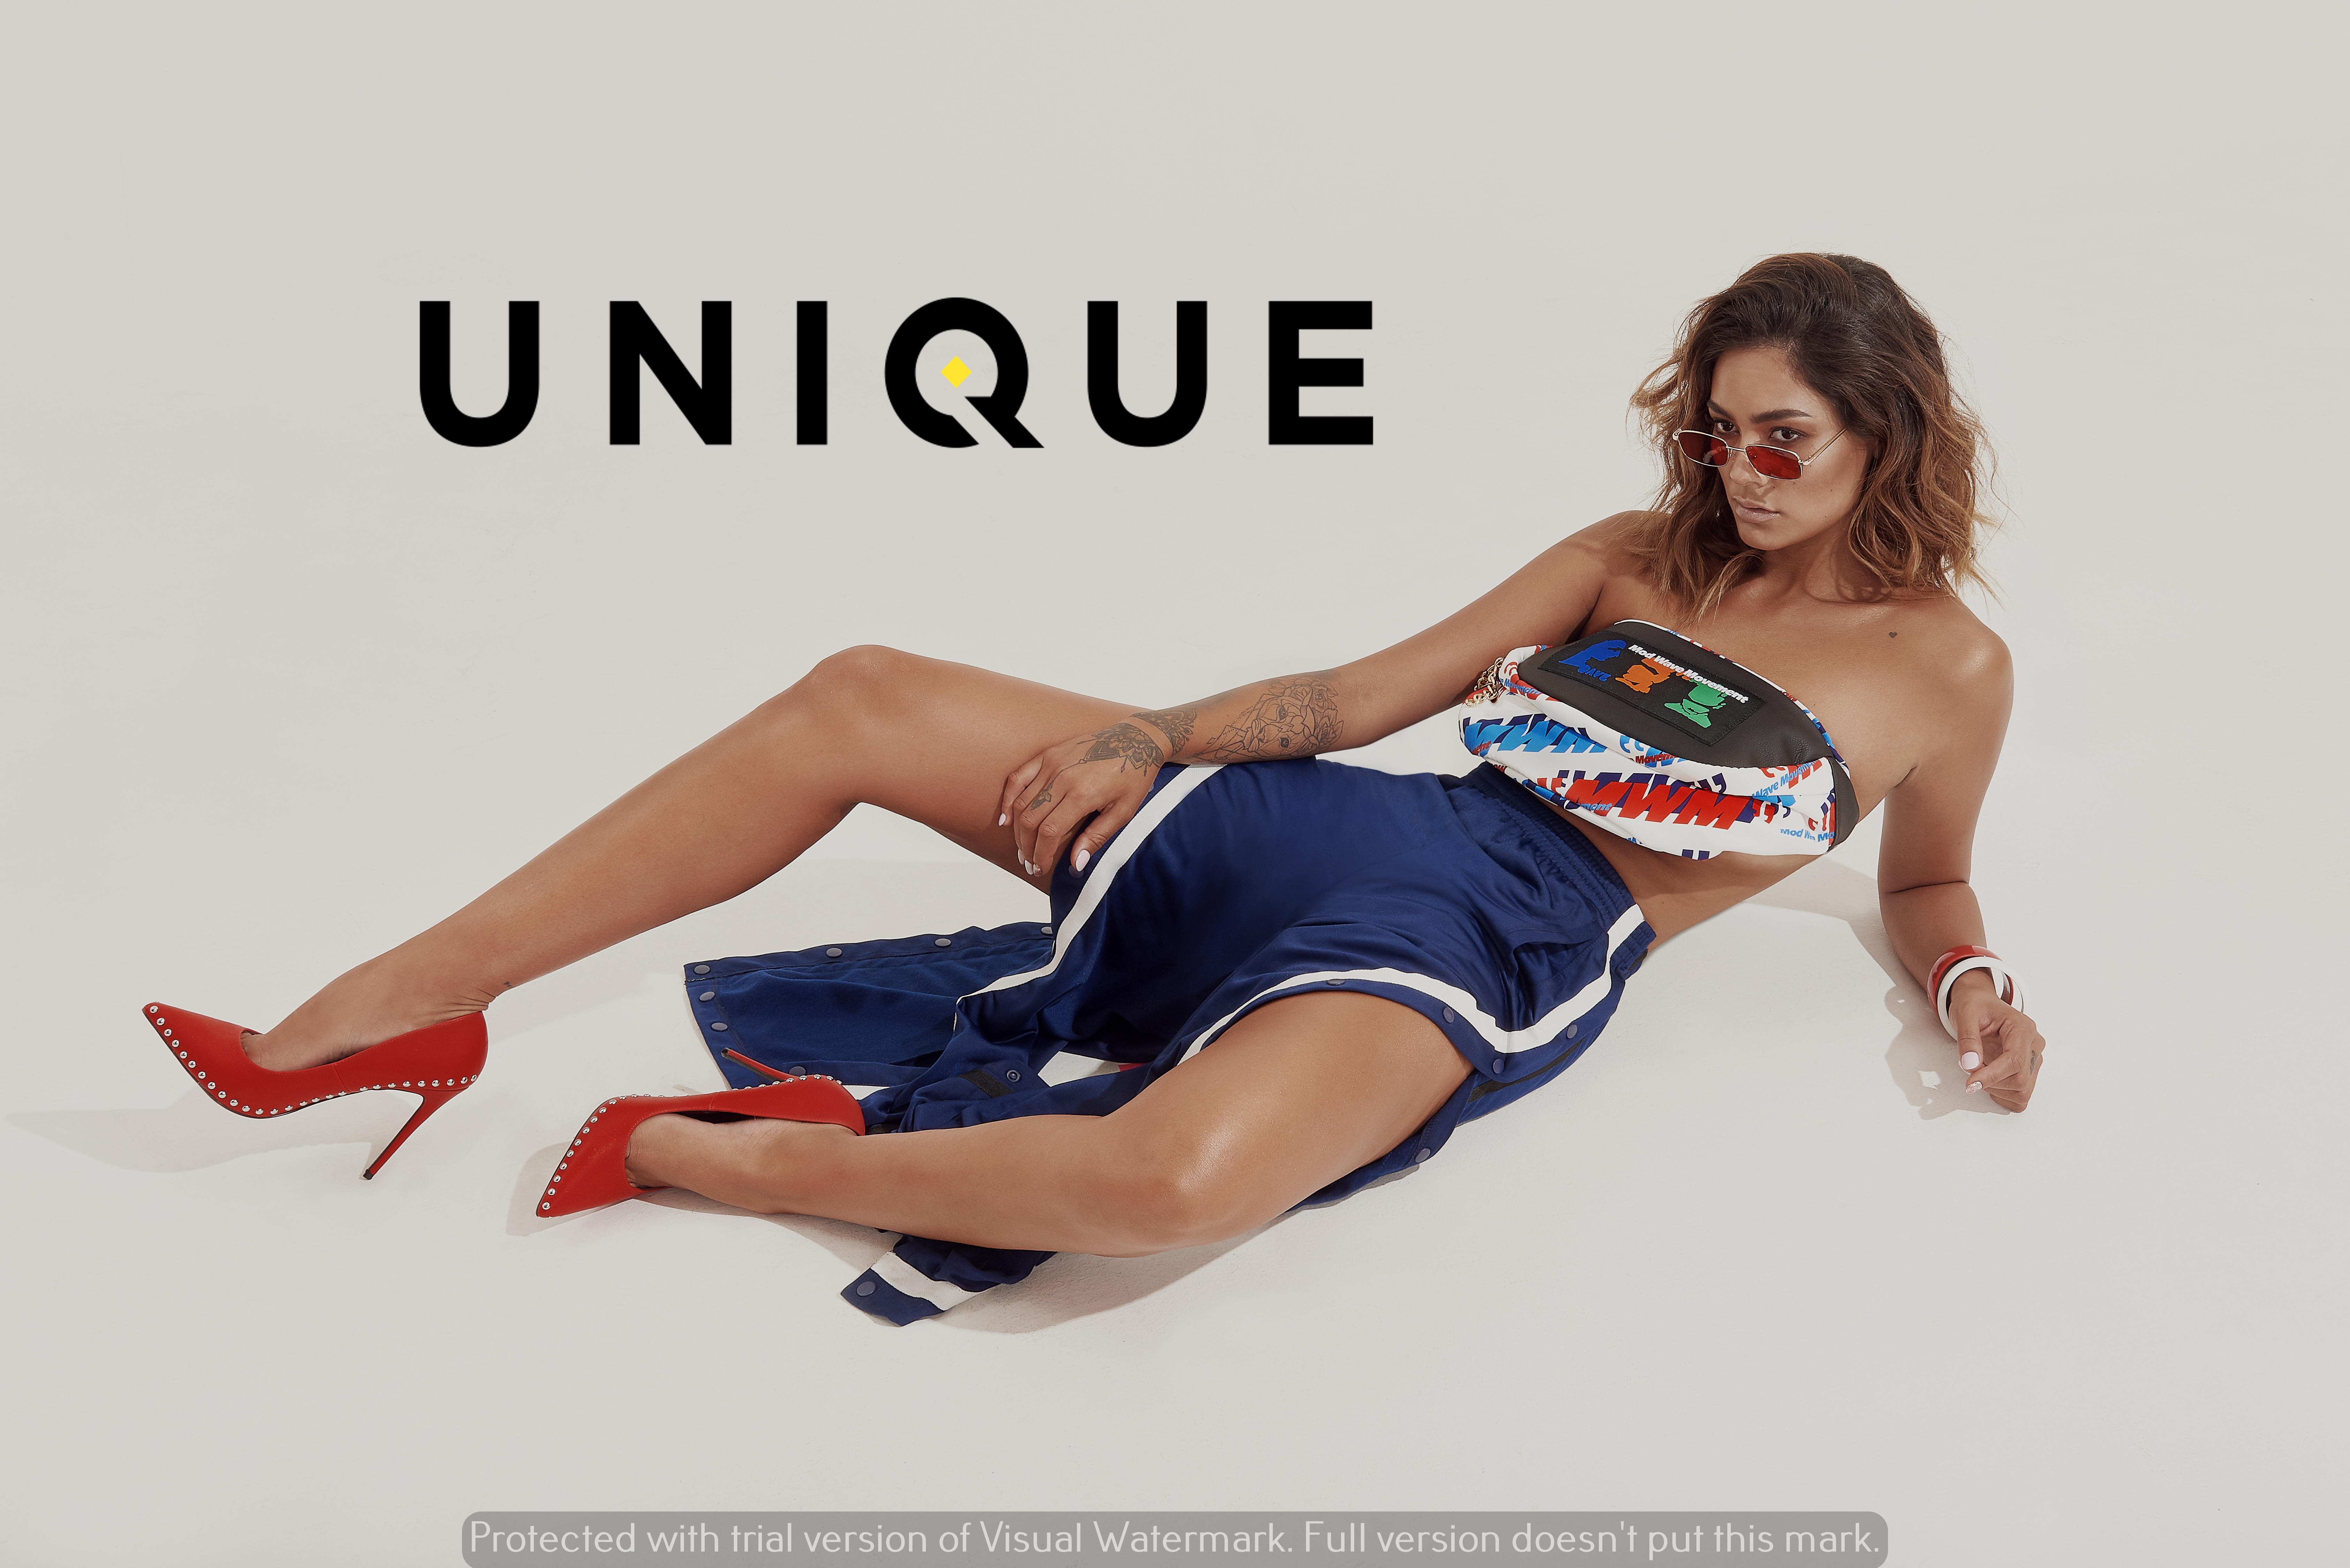  Unique Shoes celebra un año desde su lanzamiento con Camila Recabarren como rostro